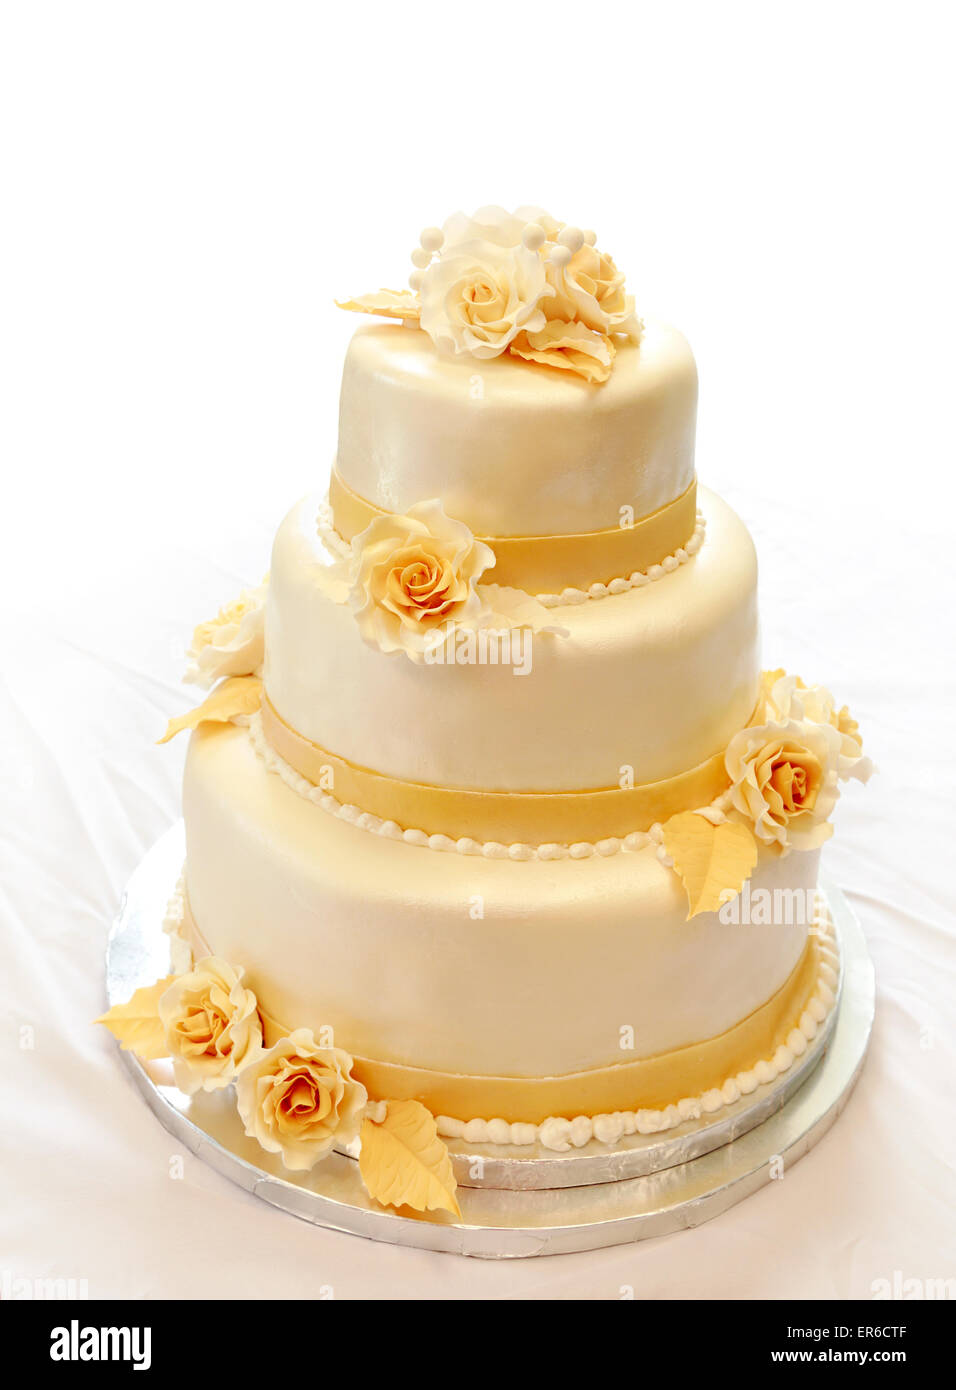 Gâteau de mariage. 3-niveaux couverts de l'ivoire du fondant pulvérisés avec spray pearl jaune/or et roses de sucre Banque D'Images